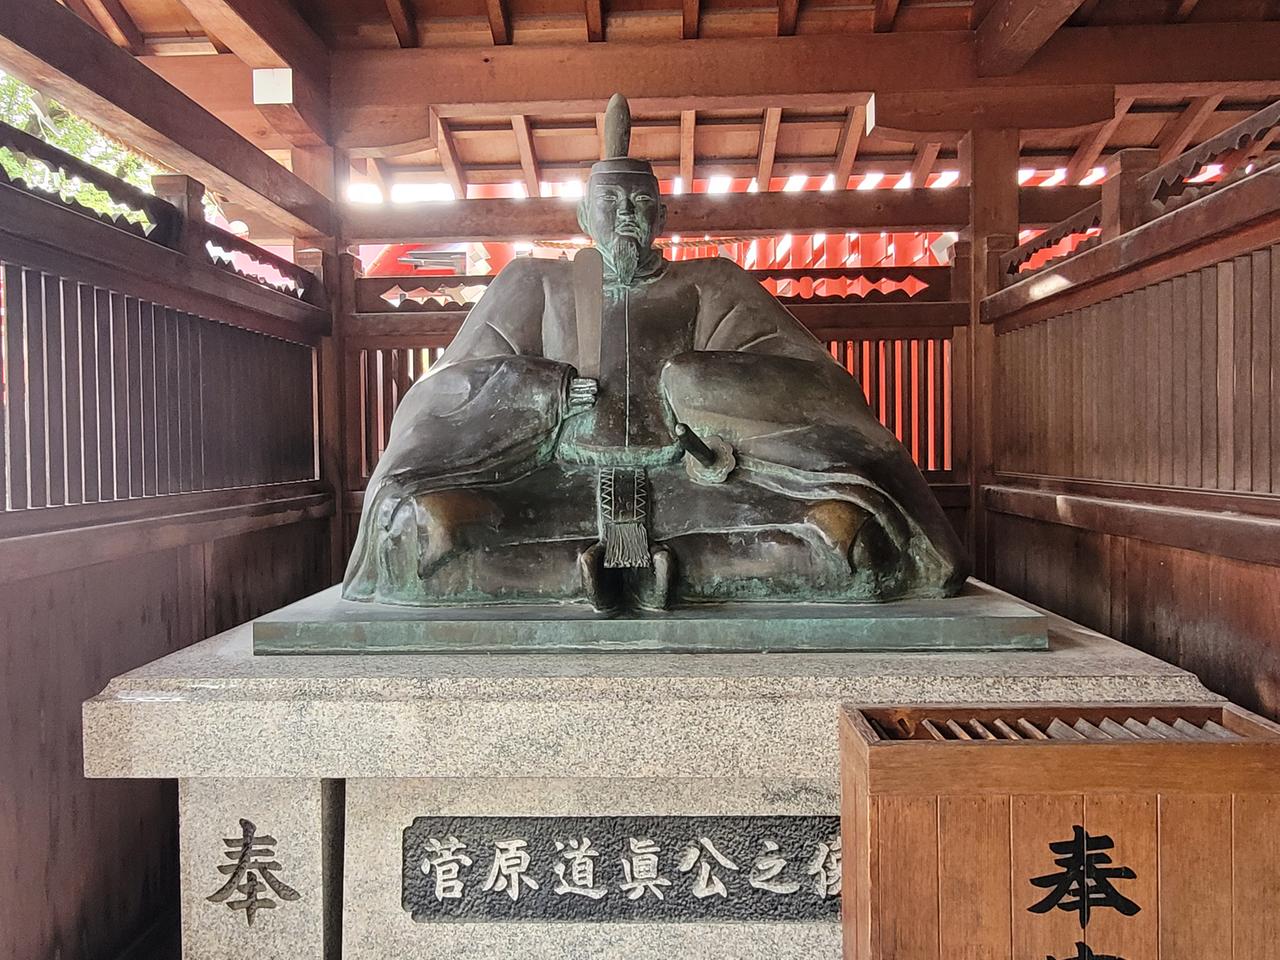 Die Bronze-Statue des Gelehrten Sugawara no Michizane steht unter einem Holzdach, durch das Licht fällt, auf einem Steinsockel.